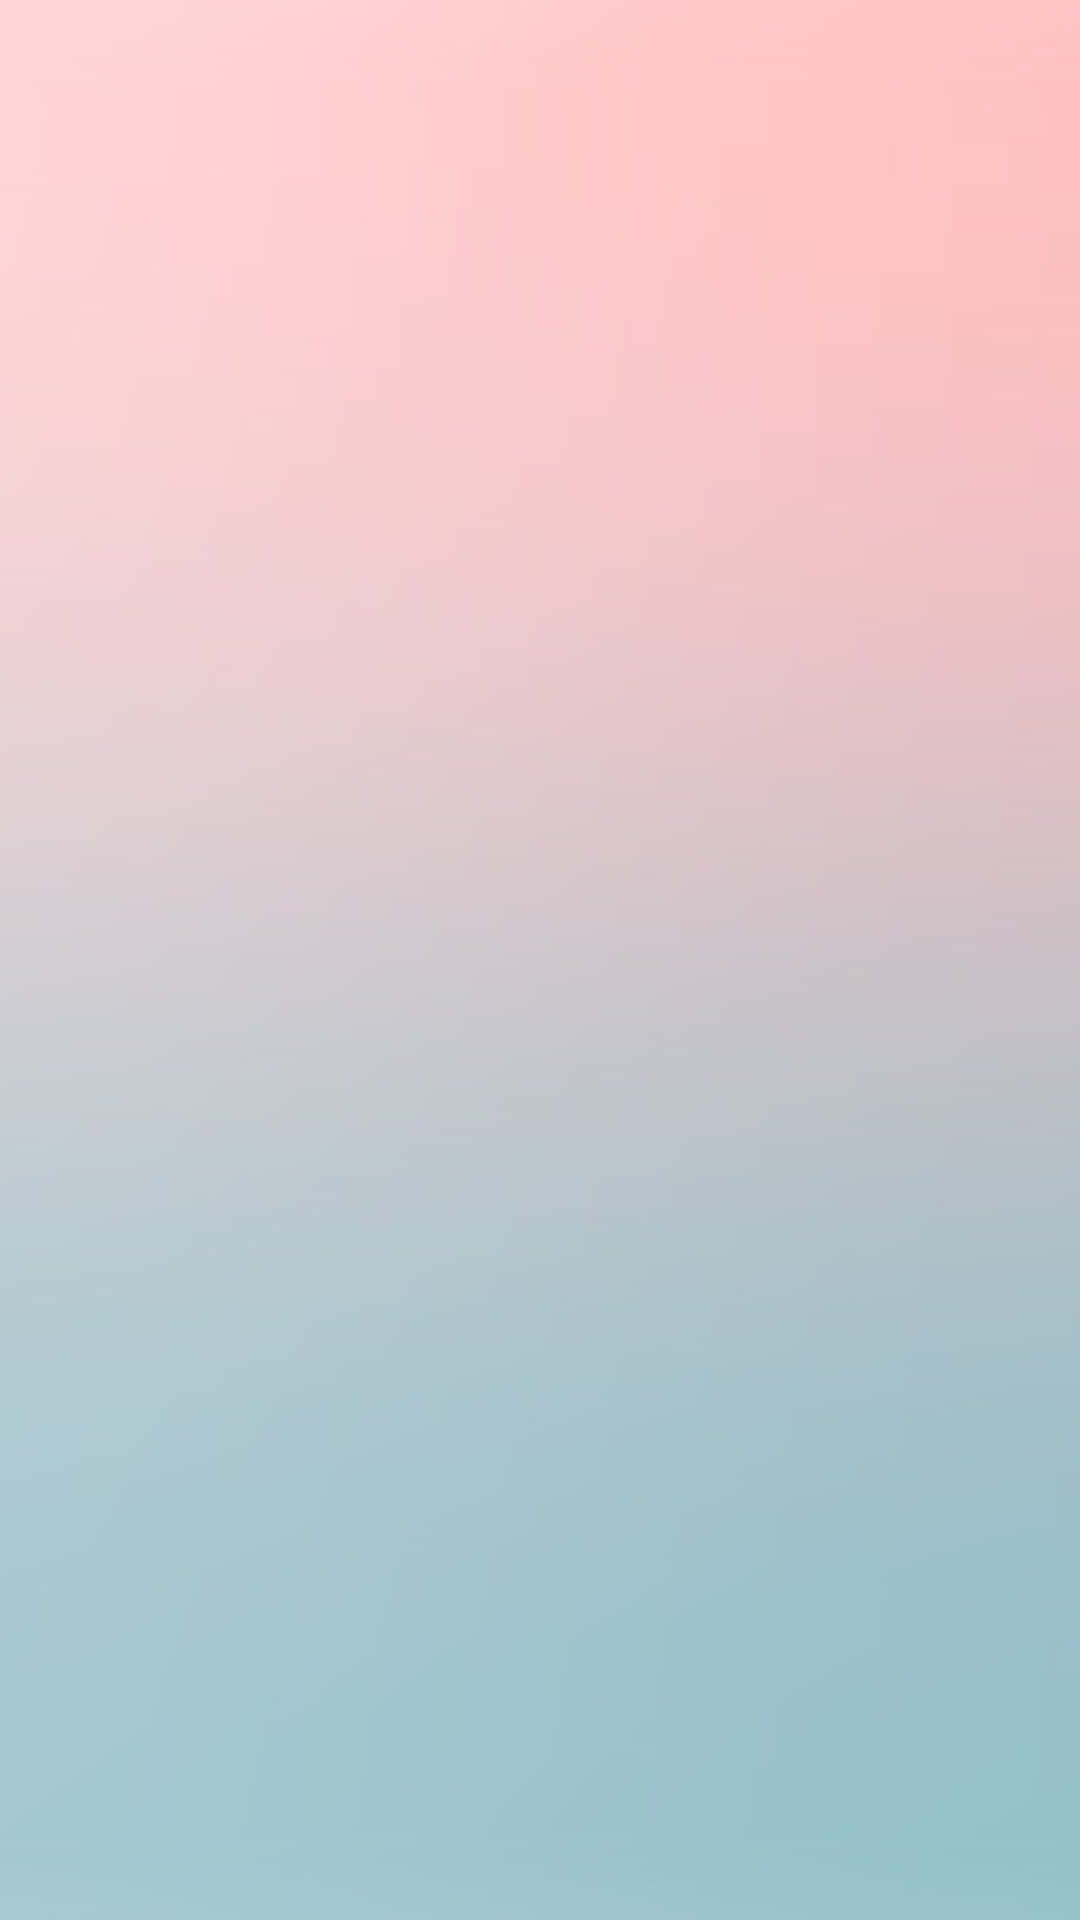 Eineabstrakte Mischung Aus Sanften Pastellblau-, Pink- Und Weißtönen Wallpaper